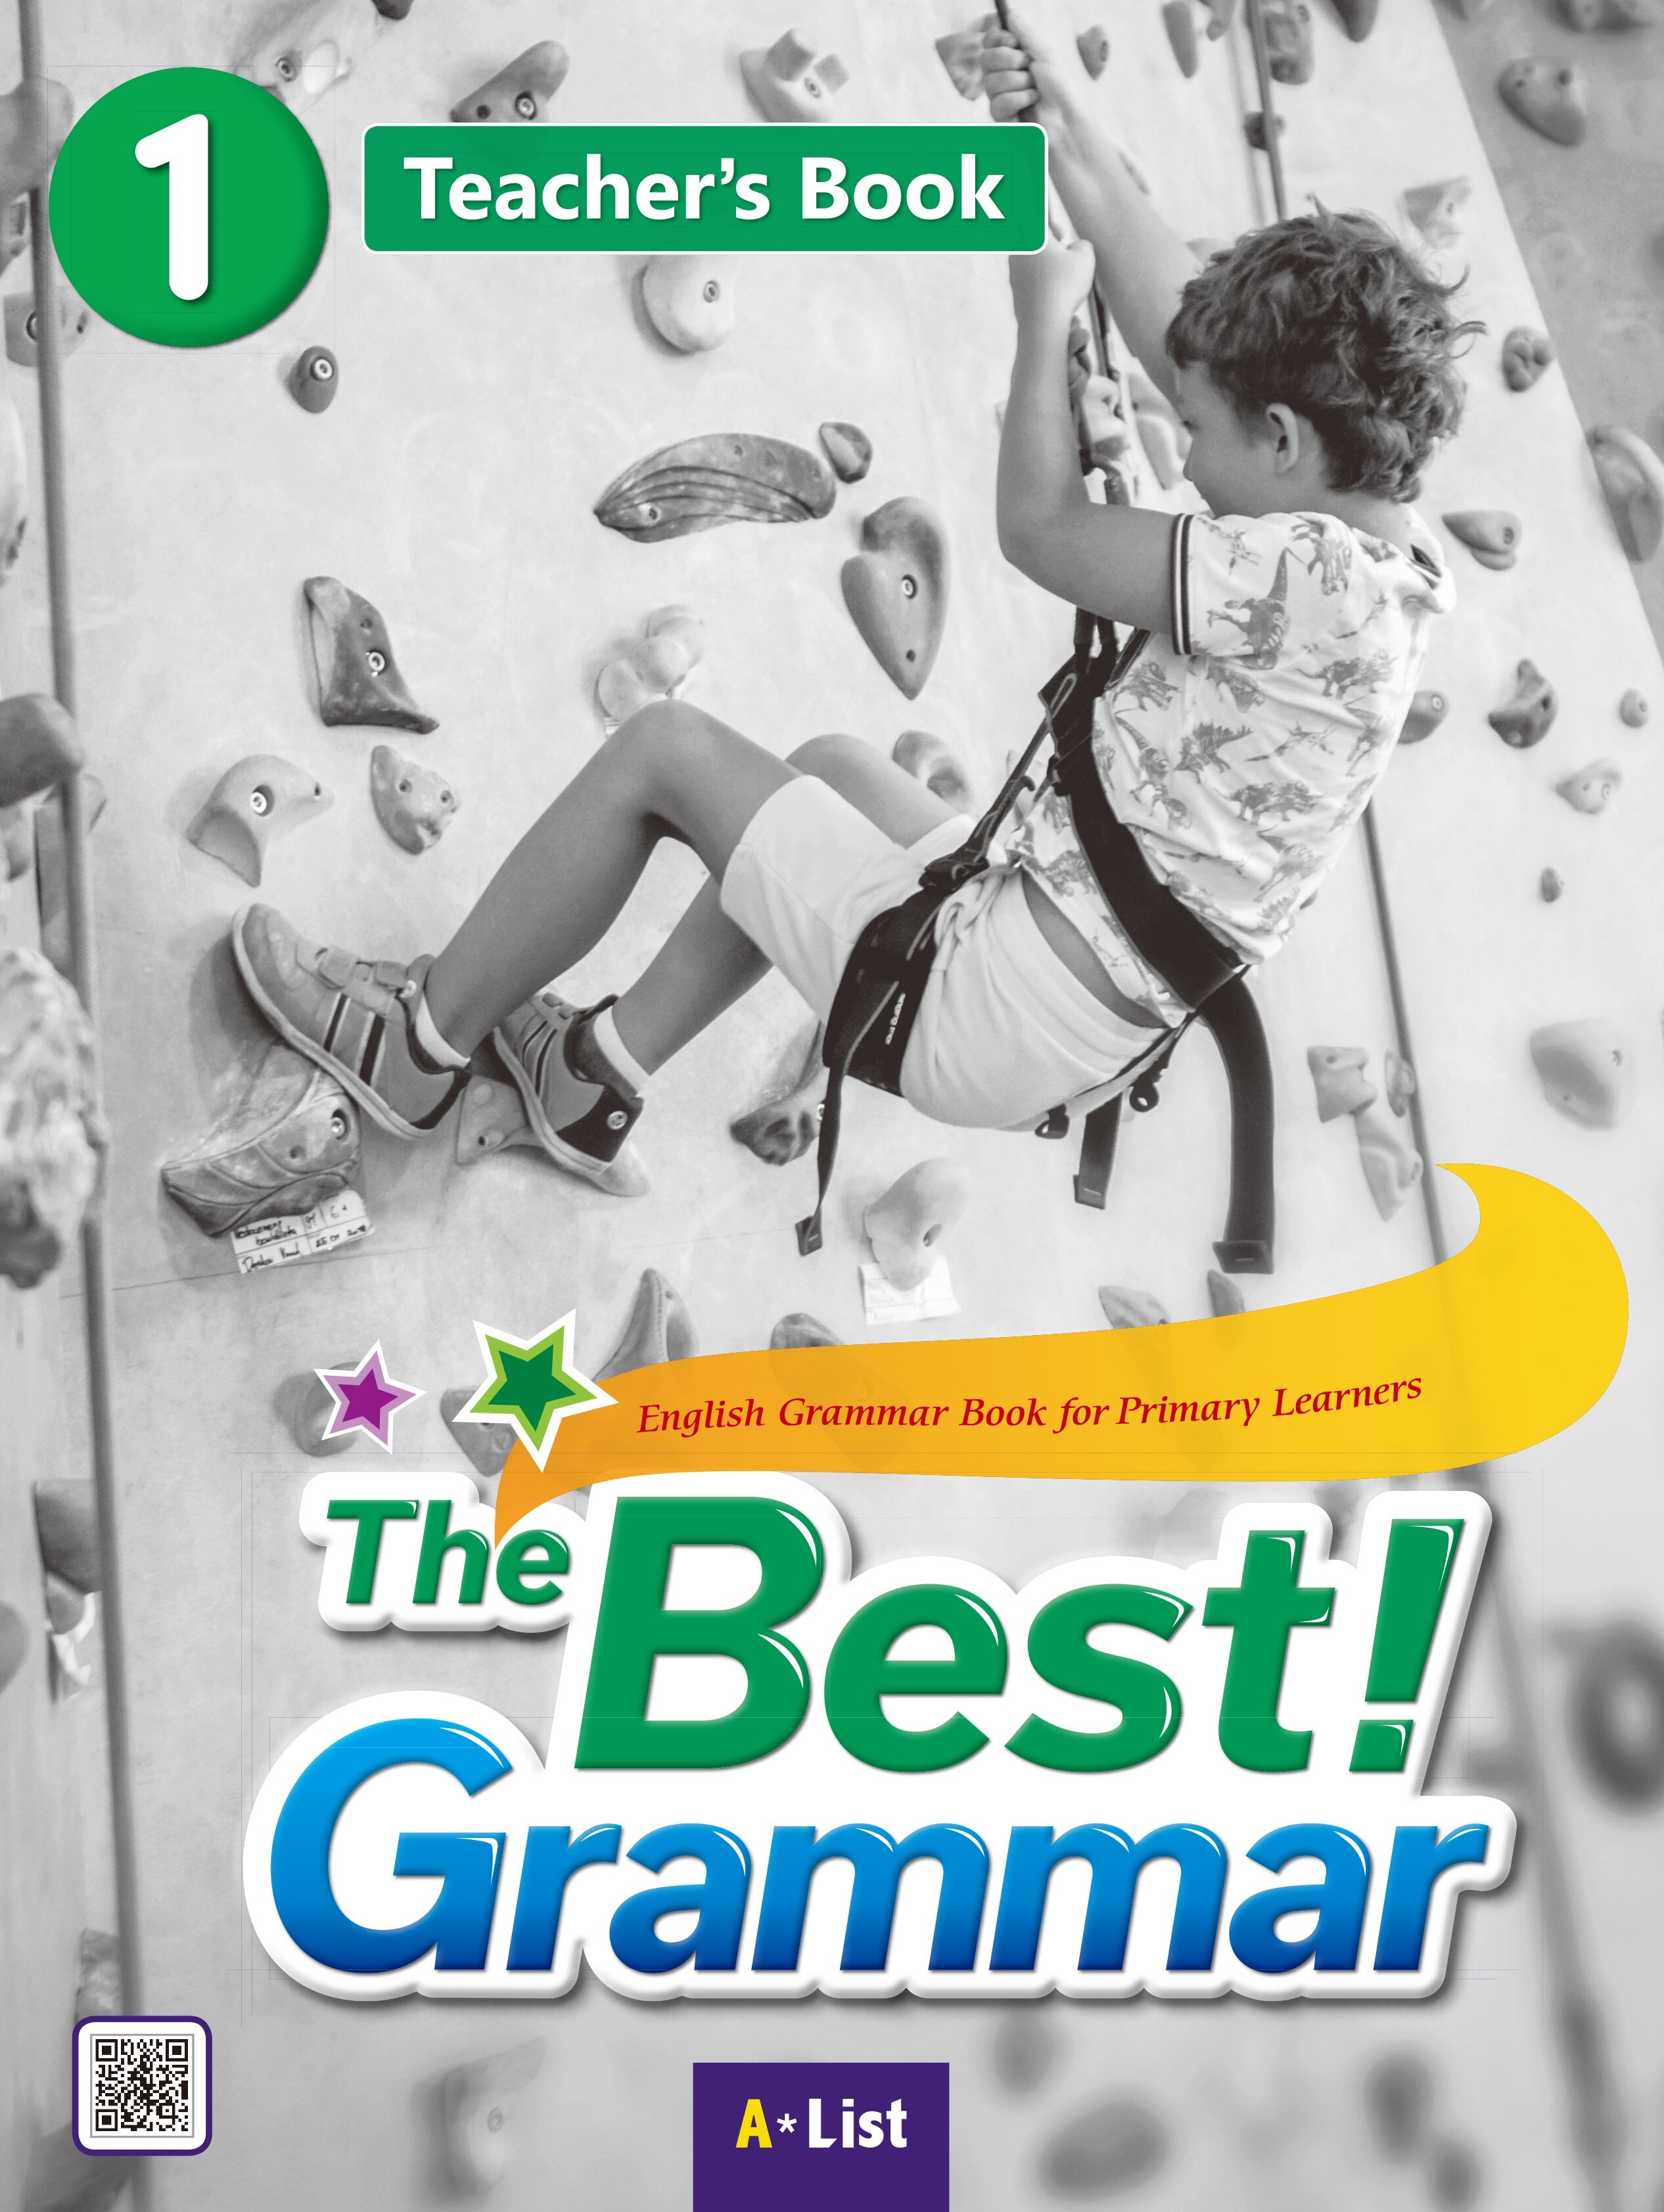 The Best Grammar 1 : Teachers Book (Teachers Resource CD + Worksheet)